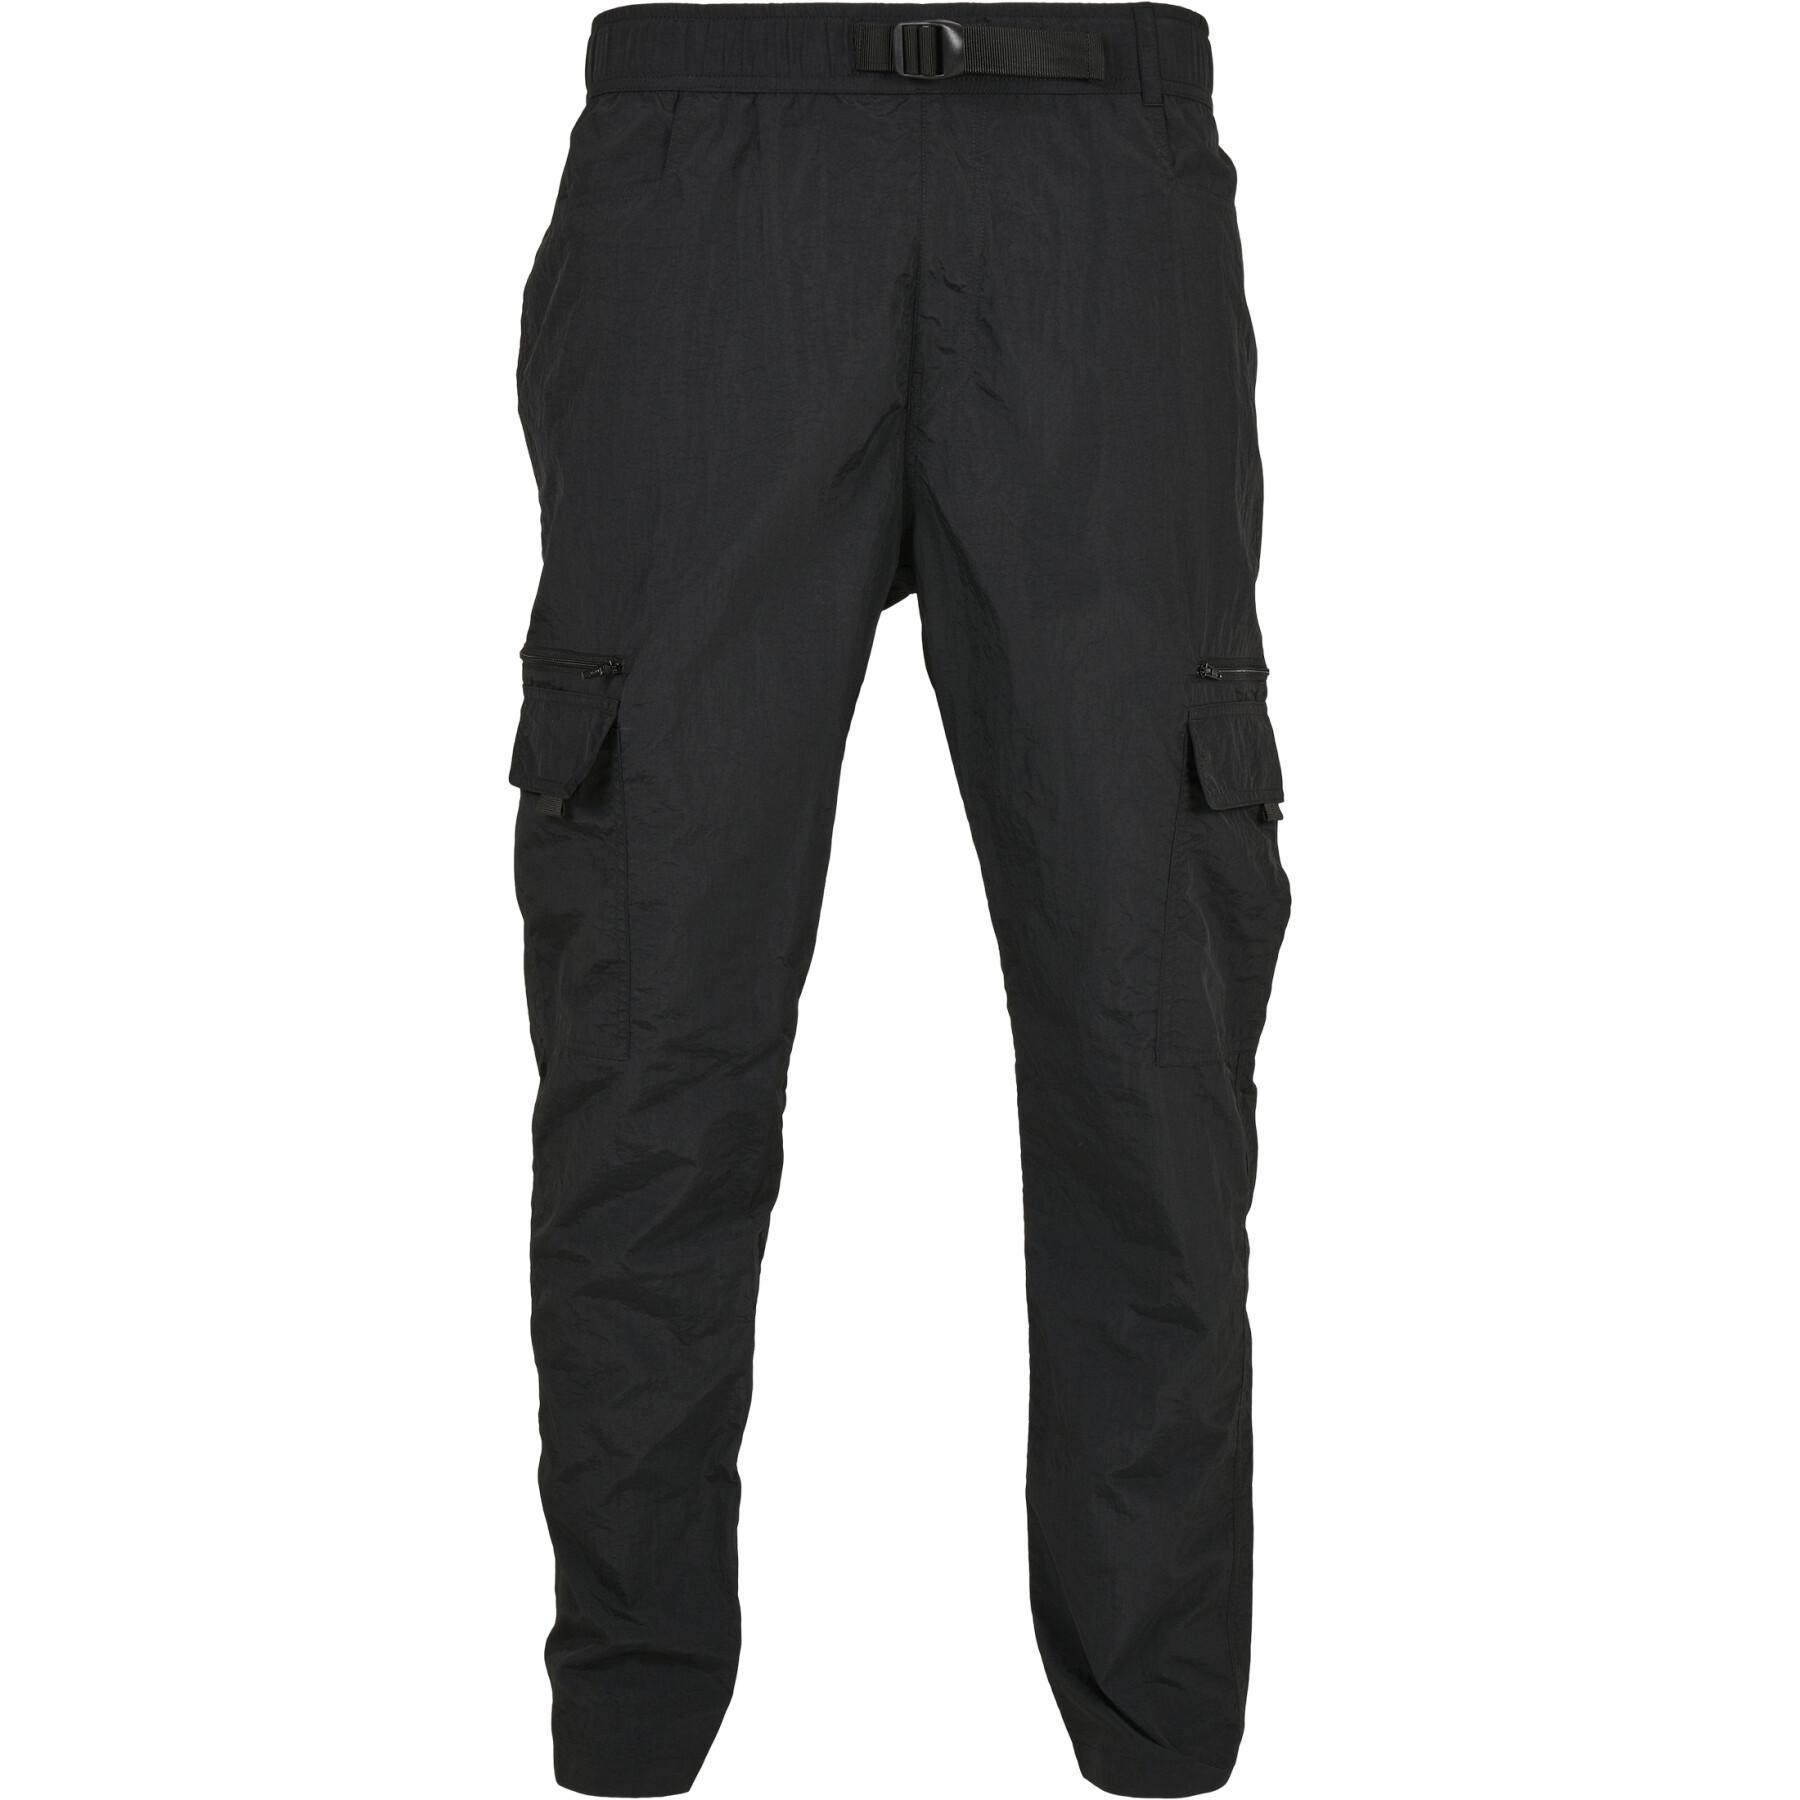 Cargo Pants Urban Classics adjustable nylon (large sizes)